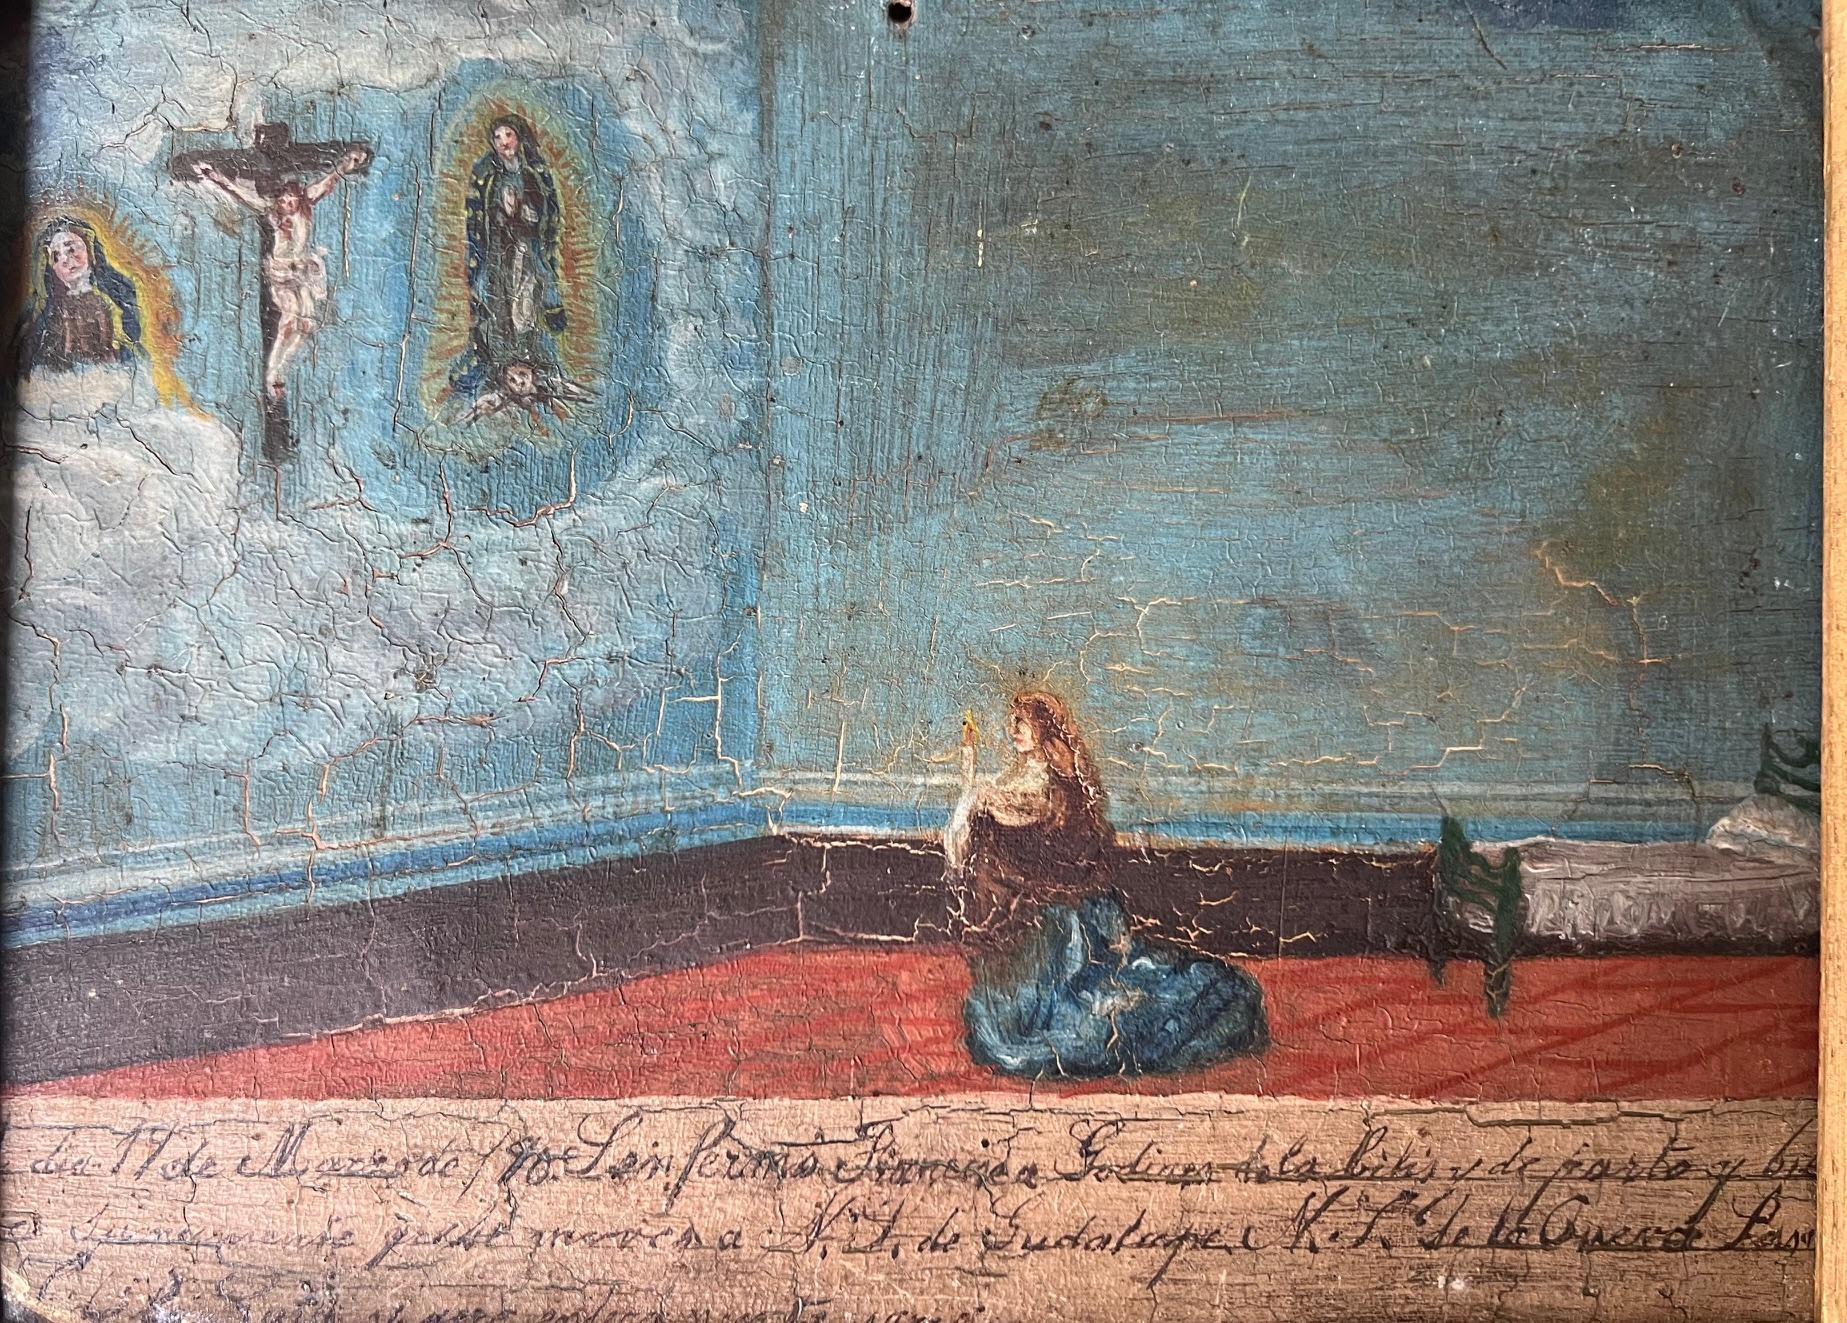 Ancien retablo mexicain réalisé en 1890 qui comprend une femme priant la Vierge Marie et Jésus-Christ.

Encadré dans un cadre en bois orné de sculptures et de peintures dorées, avec un matelas de velours brun.

Le retablo mesure environ 7 x 10